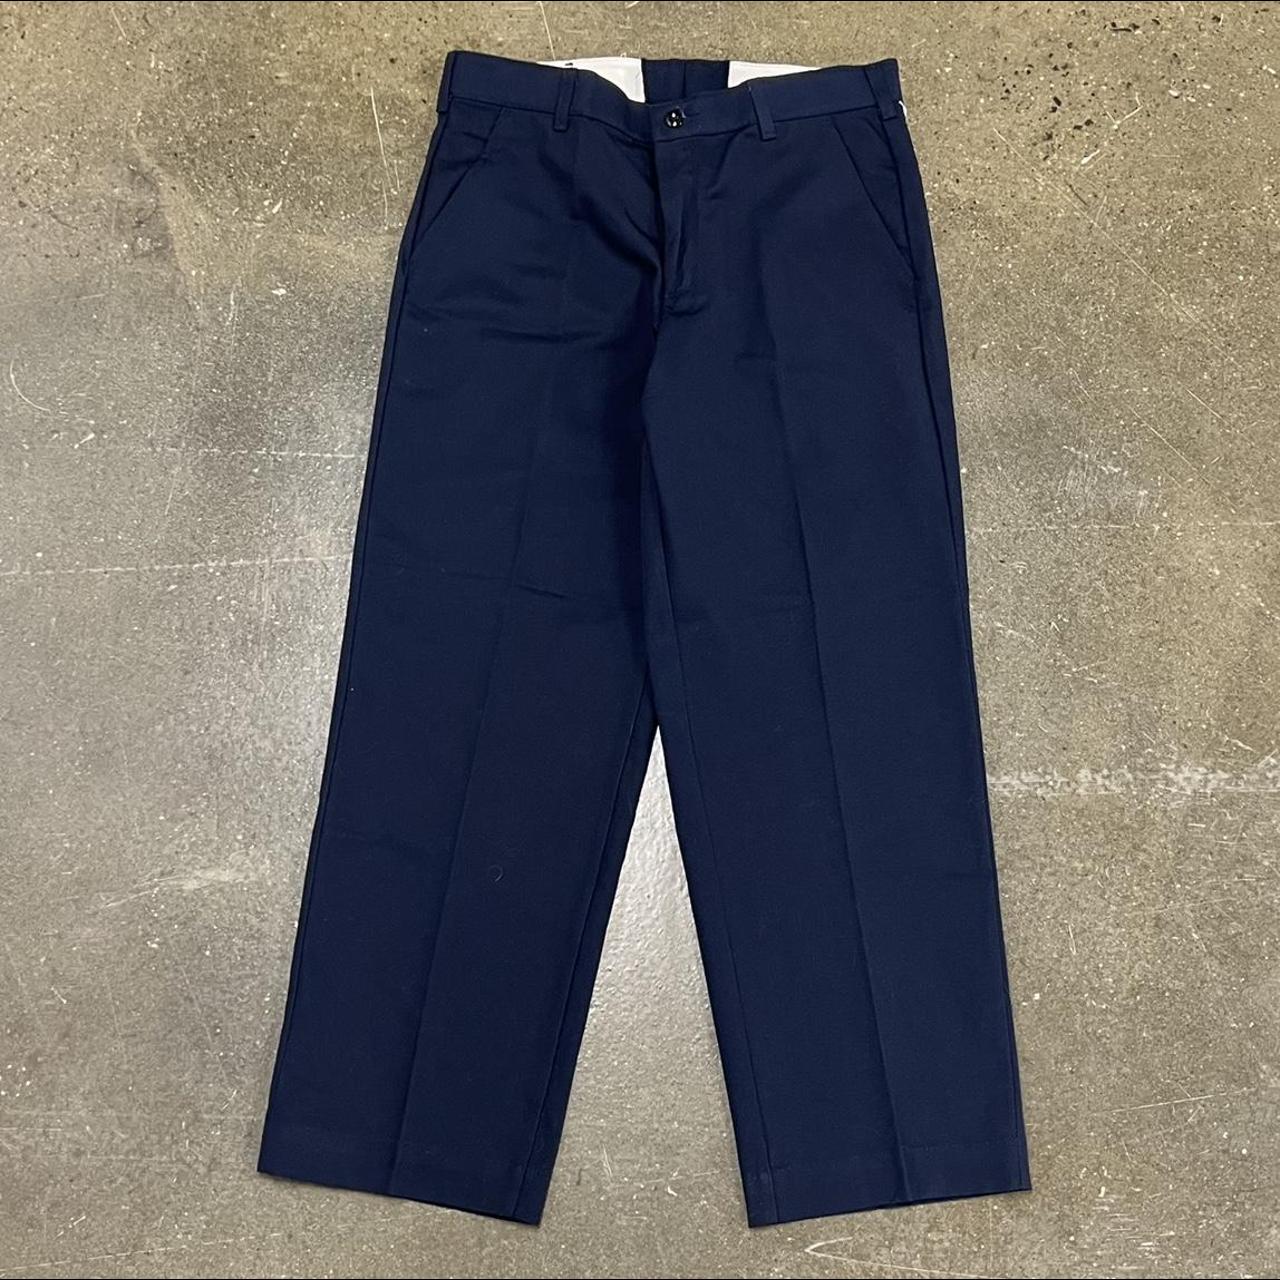 Vintage 90s/Y2K Navy Blue Straight Fit Red Kap Pants... - Depop